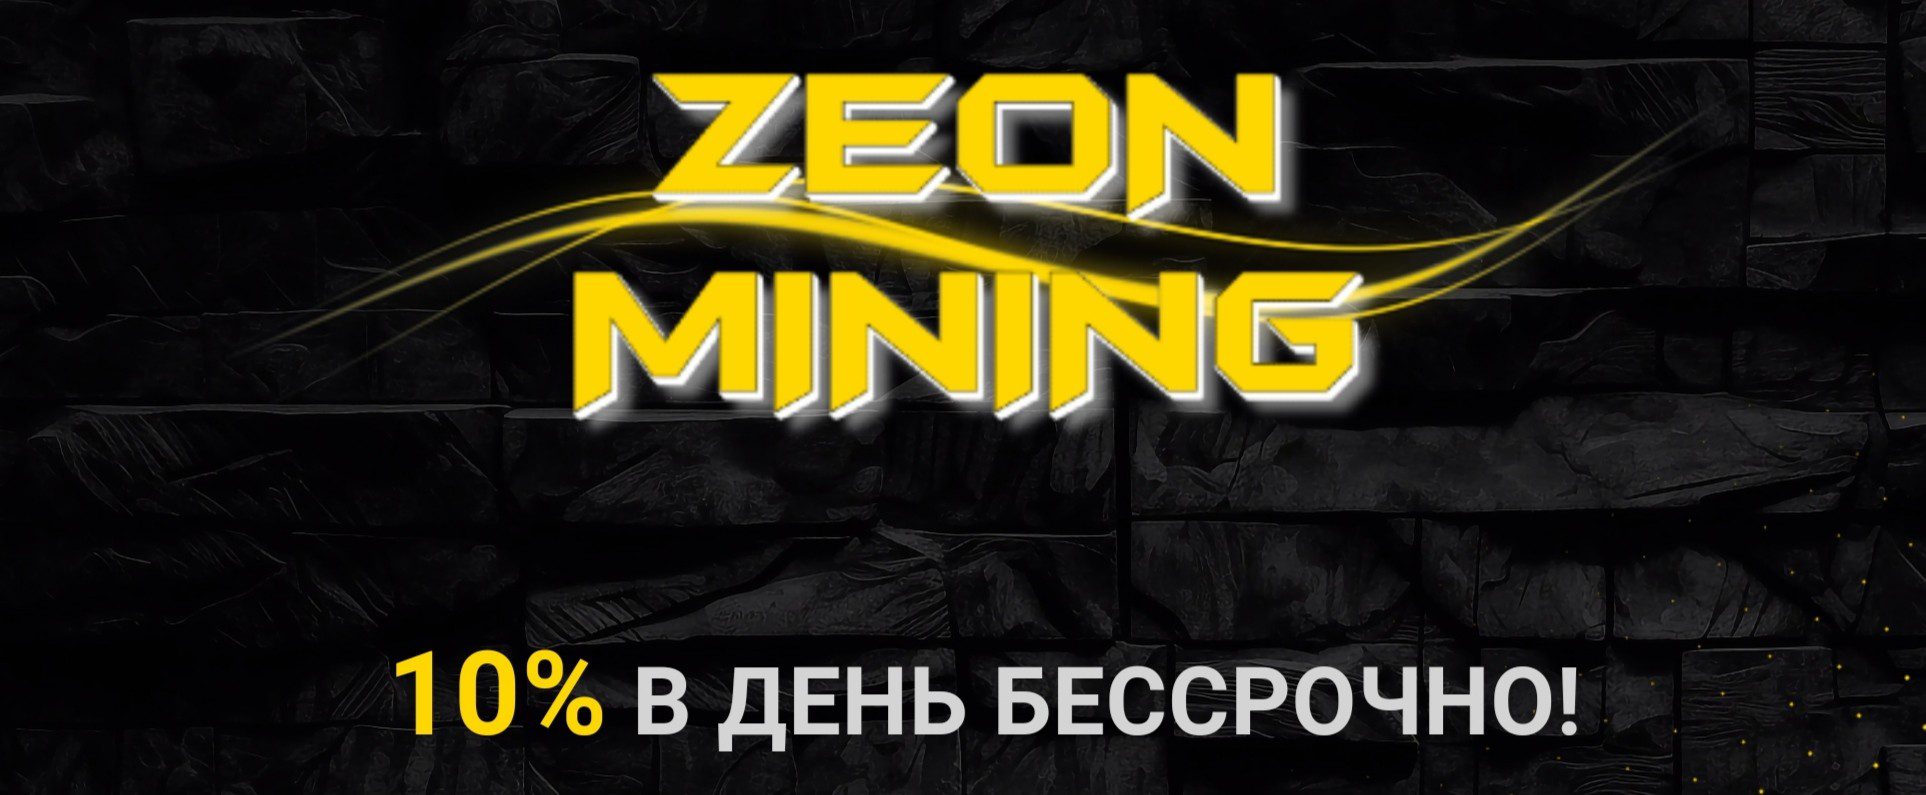 Zeon Mining проект обзор